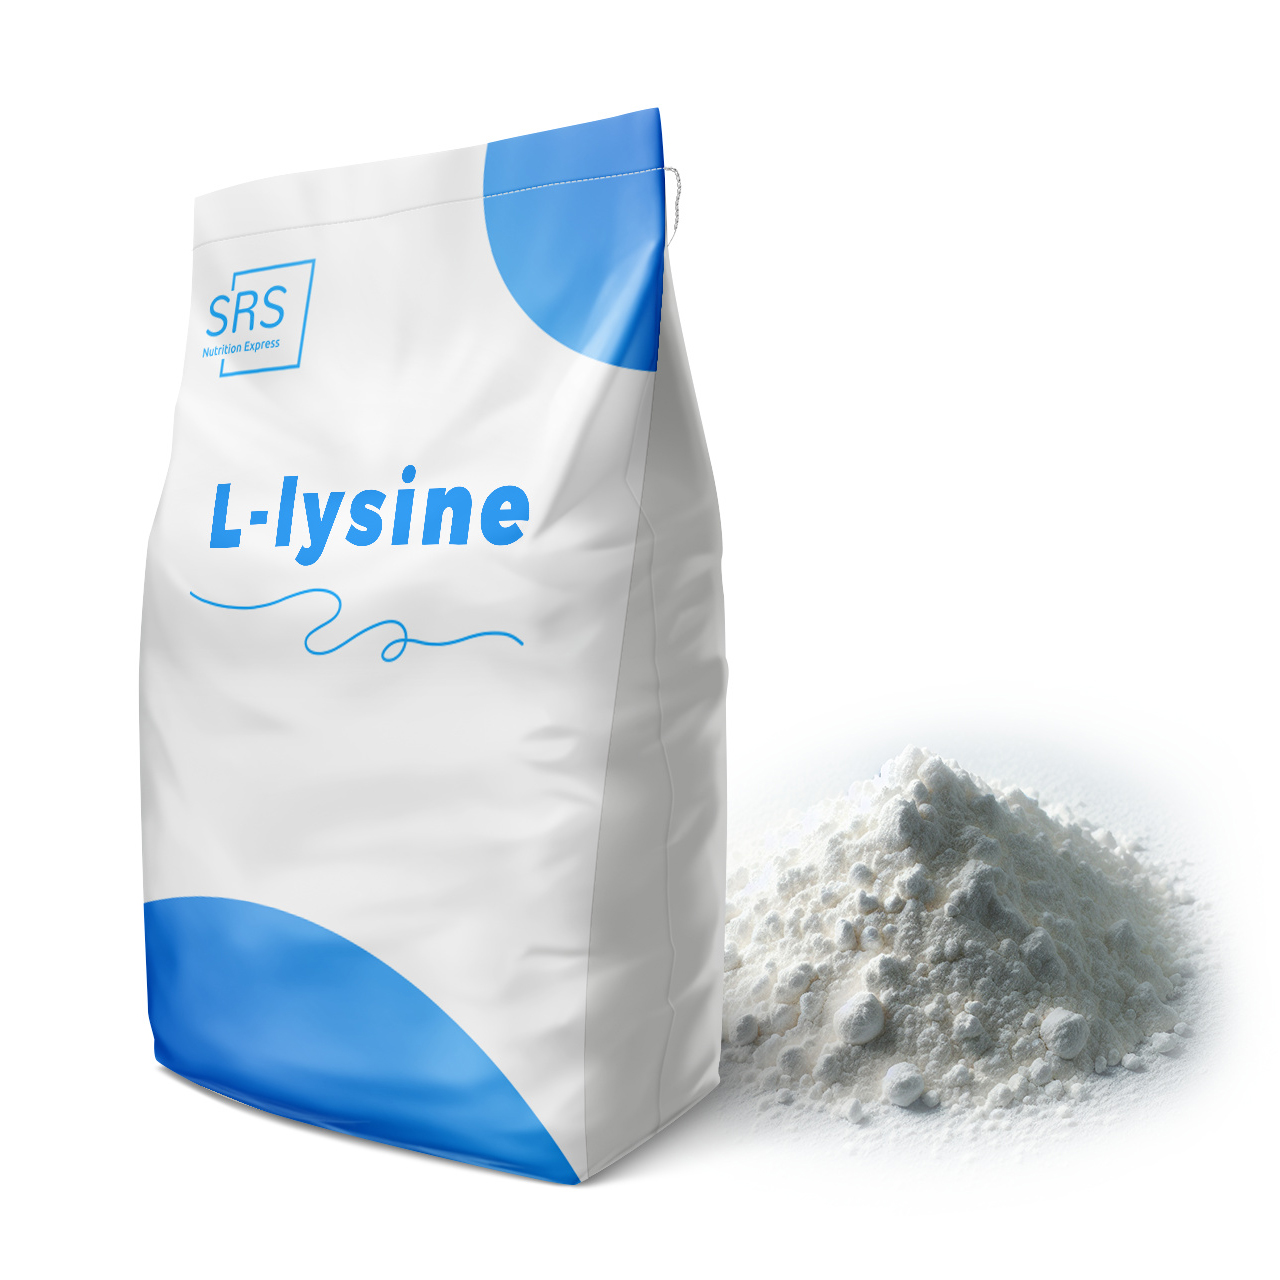 Hochwirksames L-Lysin für Anhänger eines gesunden Lebensstils